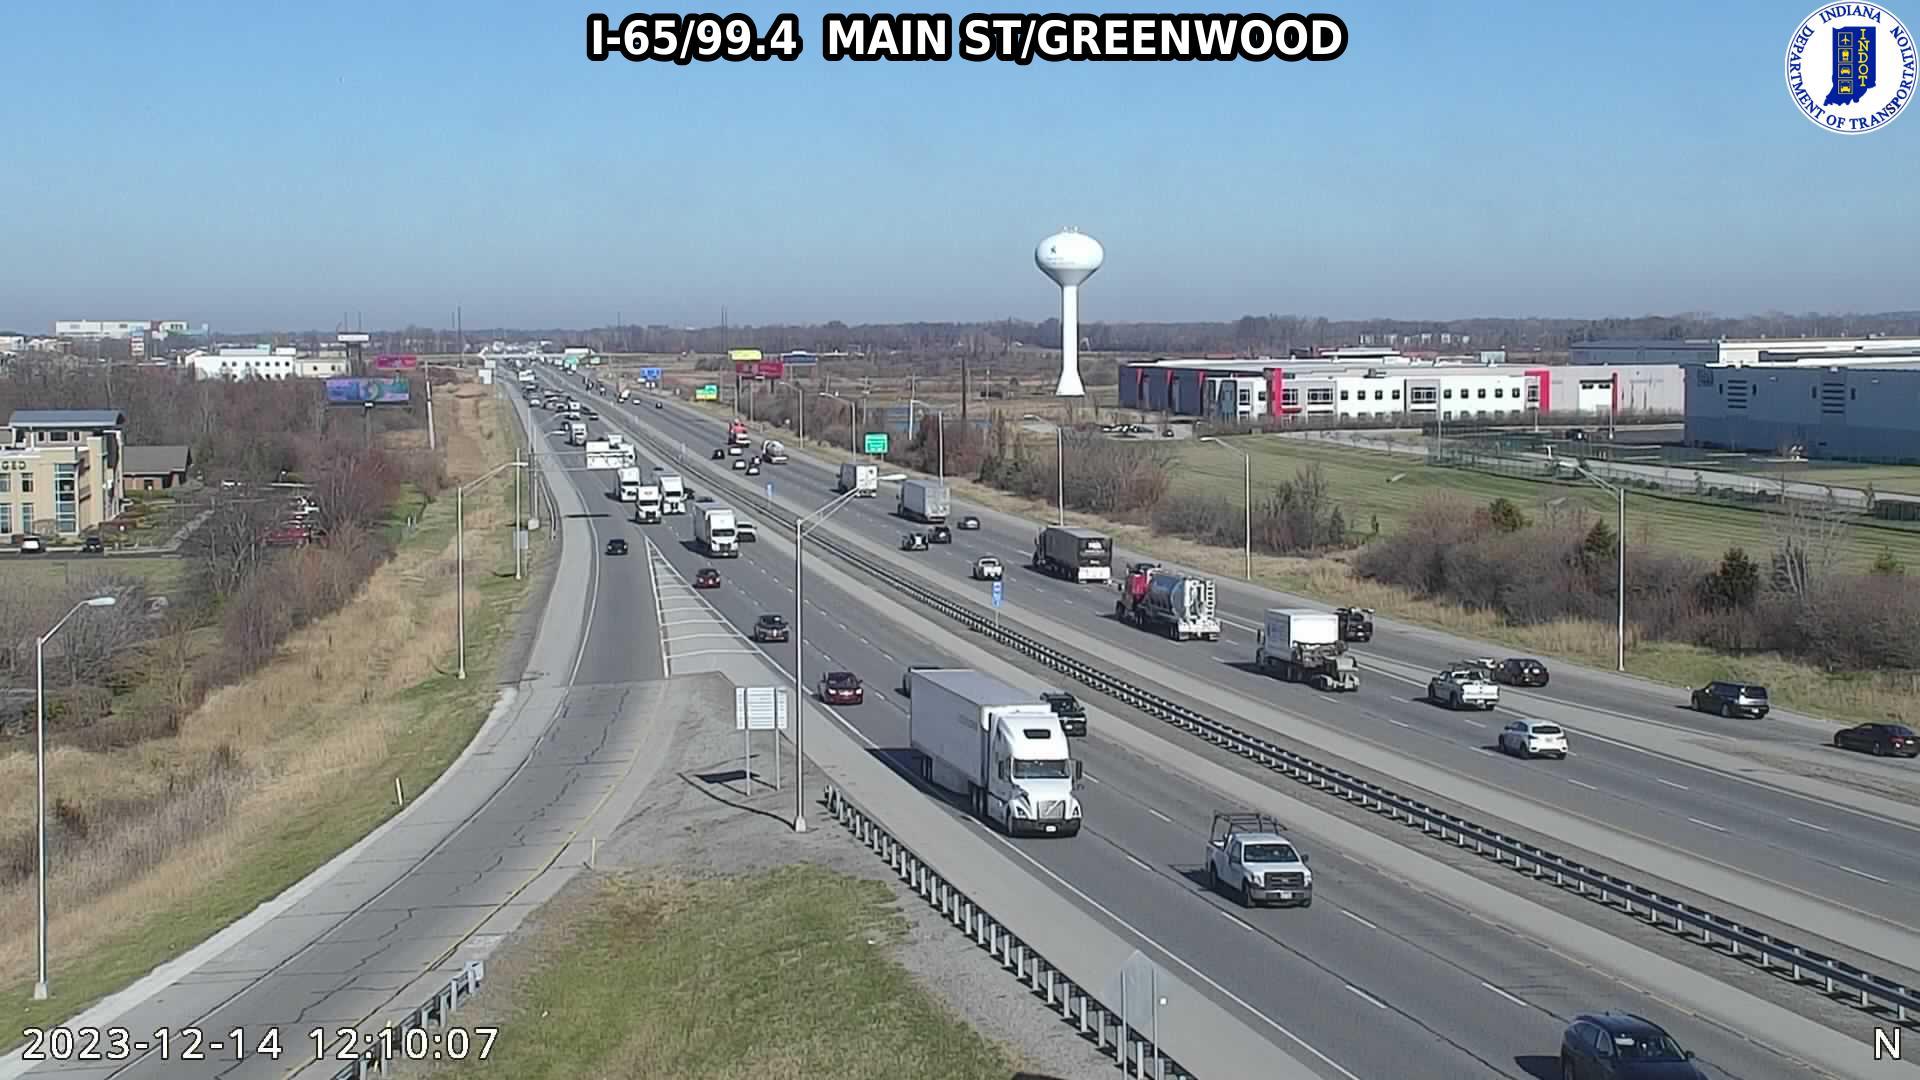 Traffic Cam Greenwood: I-65: I-65/99.4 MAIN ST - I-65/99.4 MAIN ST Player